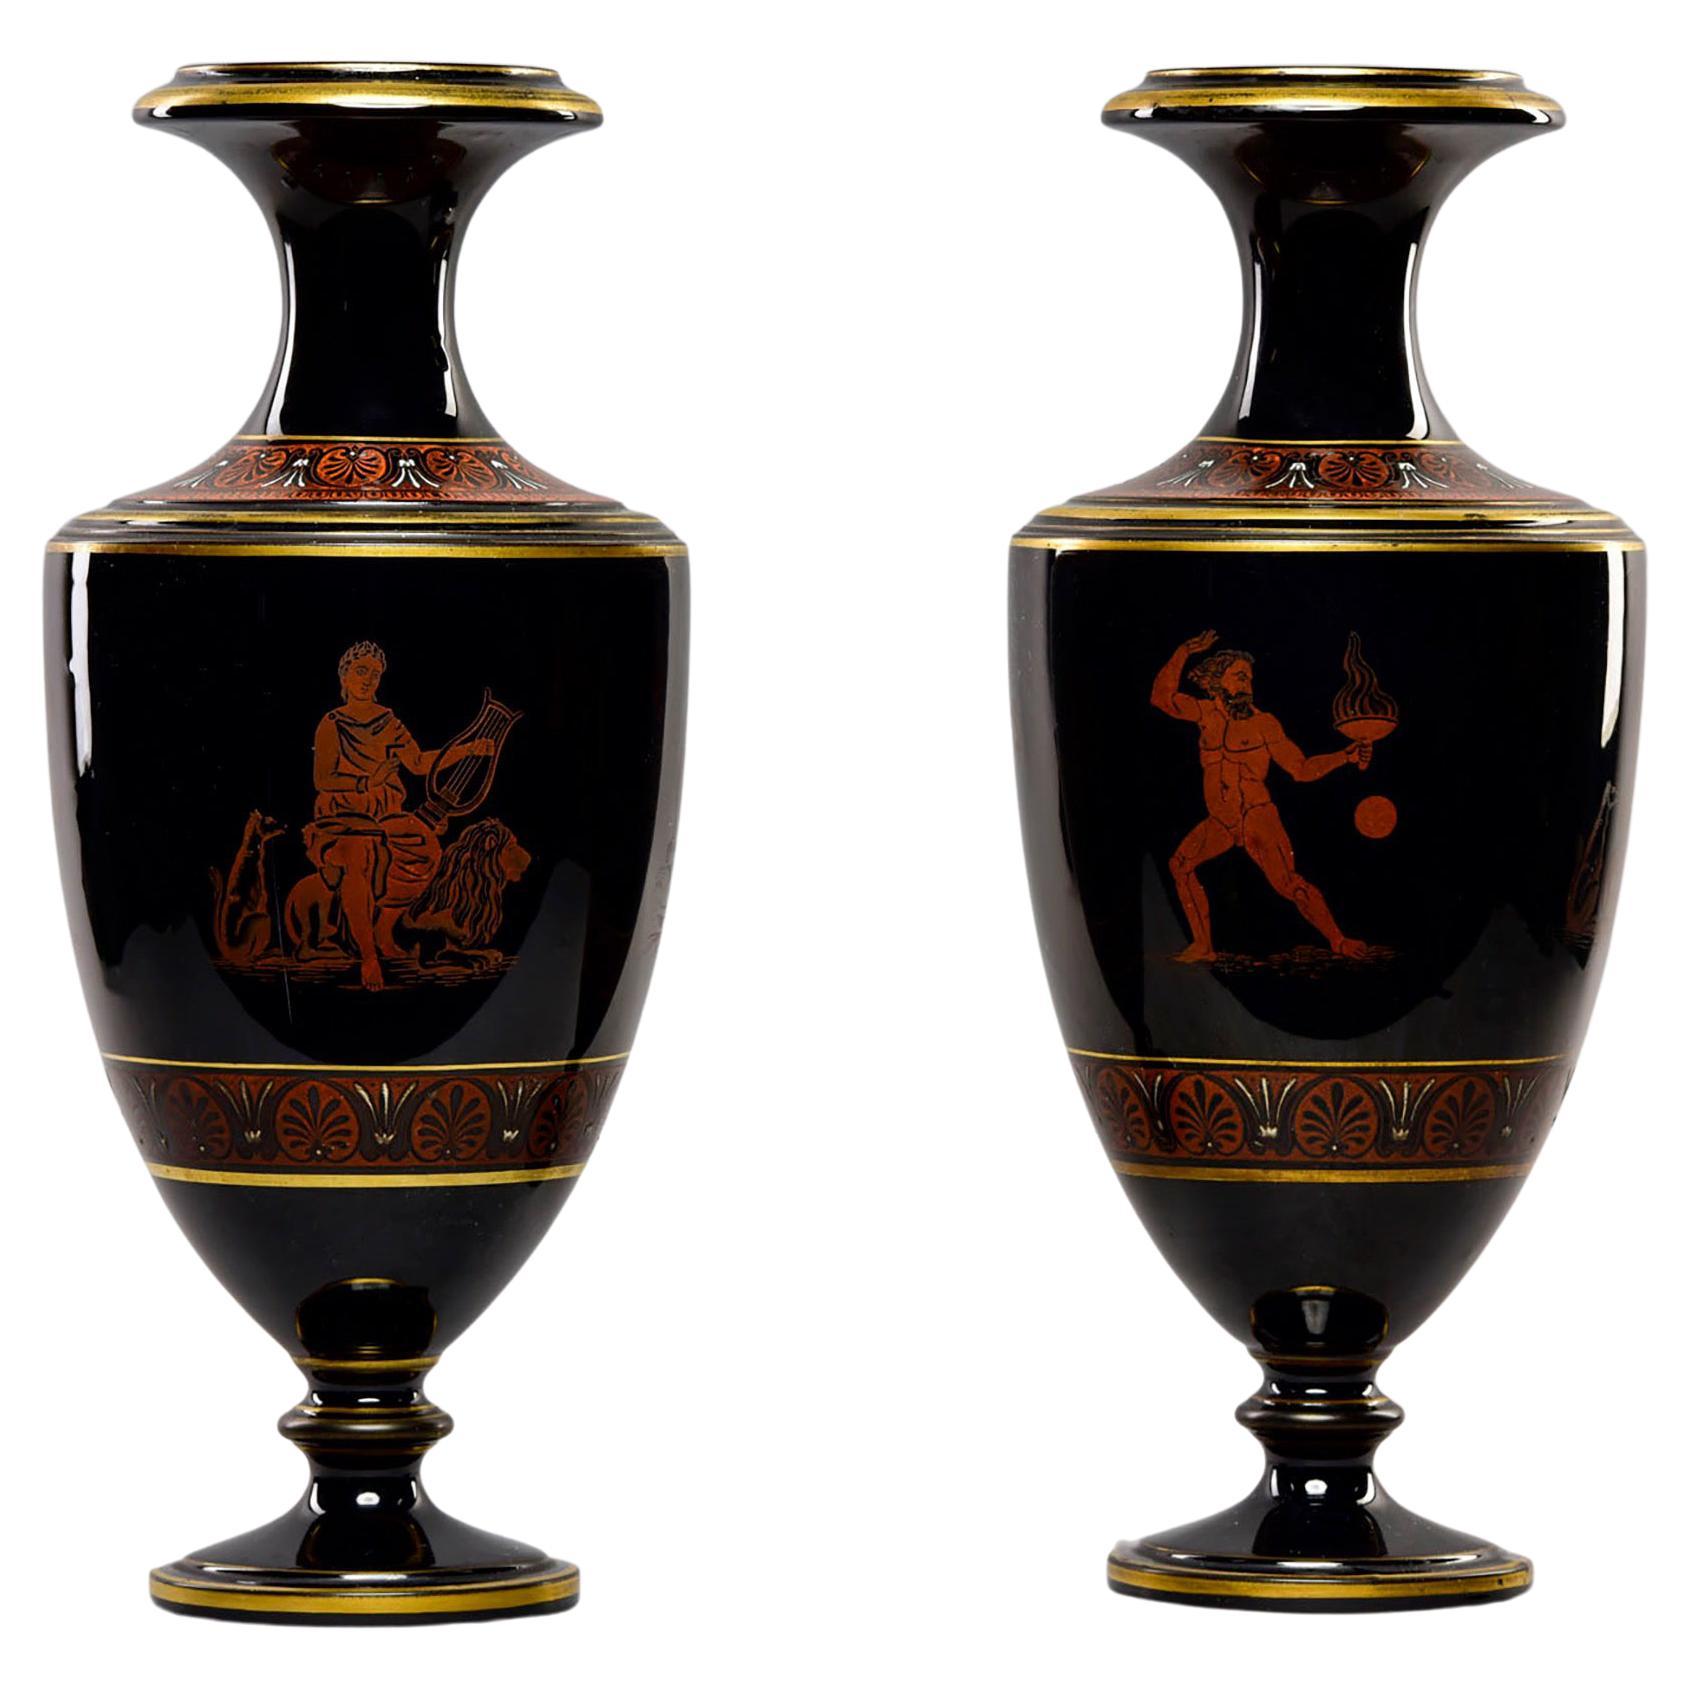 Paire de vases néoclassiques en porcelaine noire de la fin du XIXe siècle